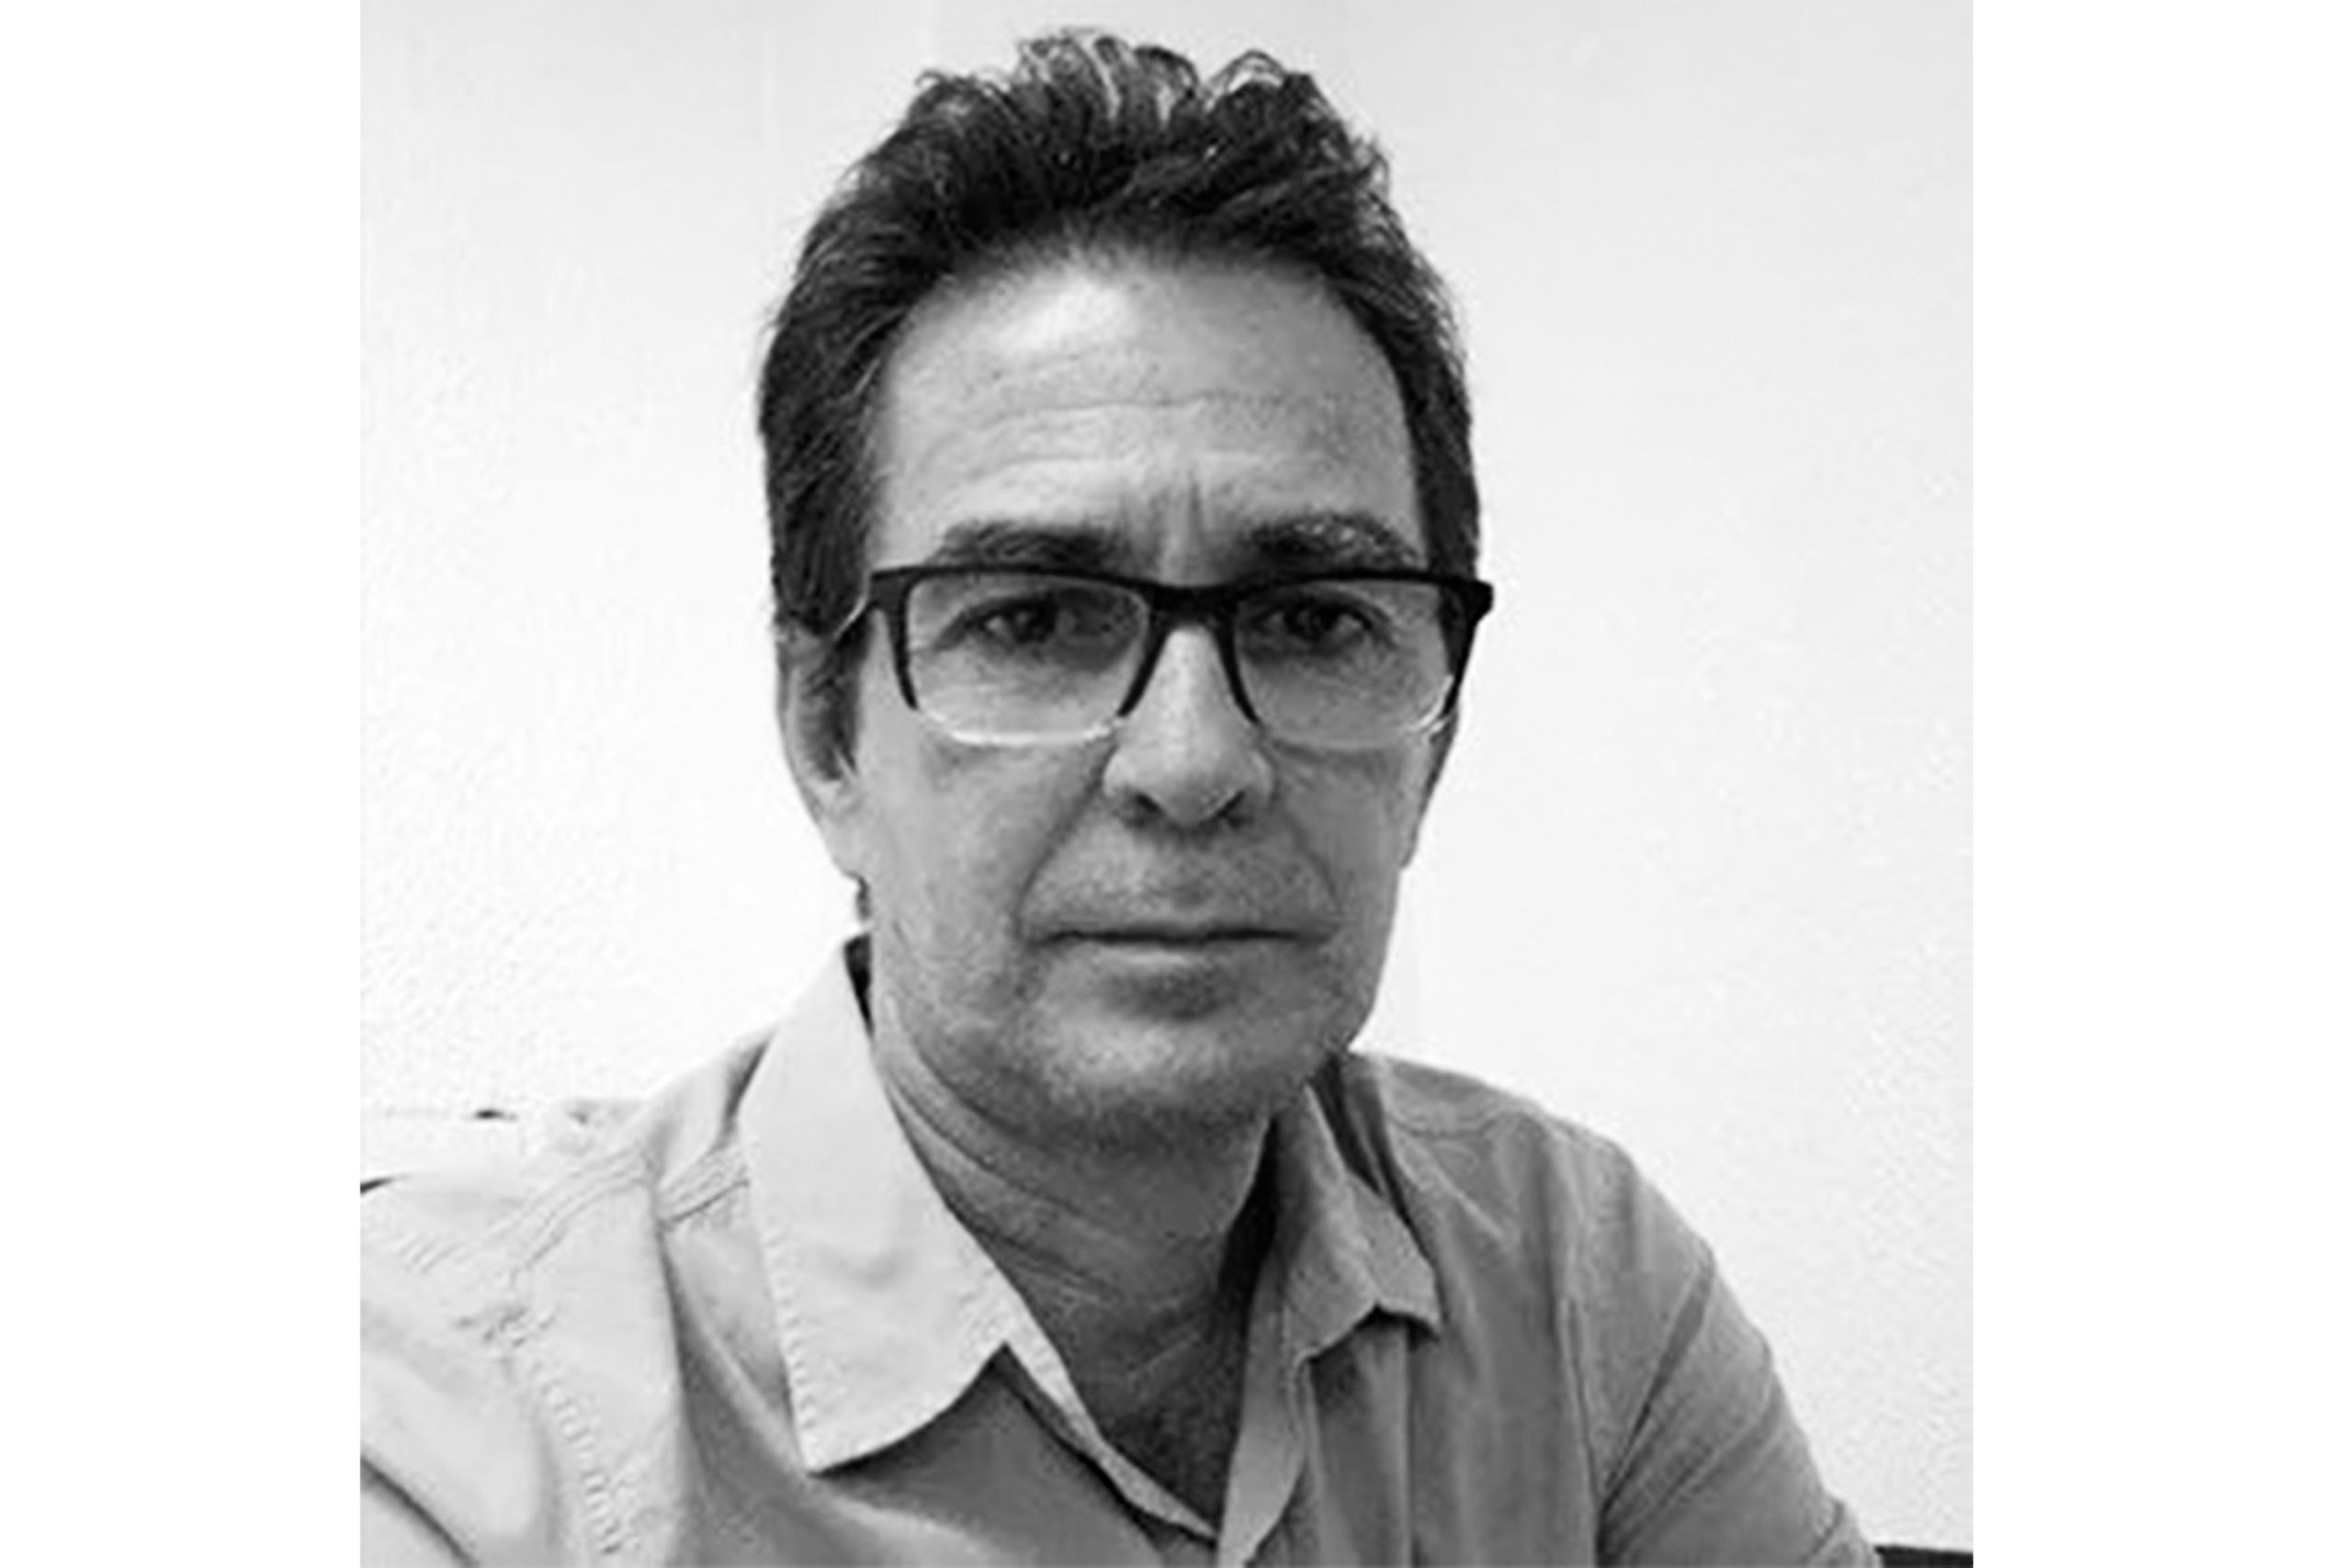 Nota de pesar da Câmara Municipal de João Pessoa pela morte do jornalista José Carlos dos Anjos